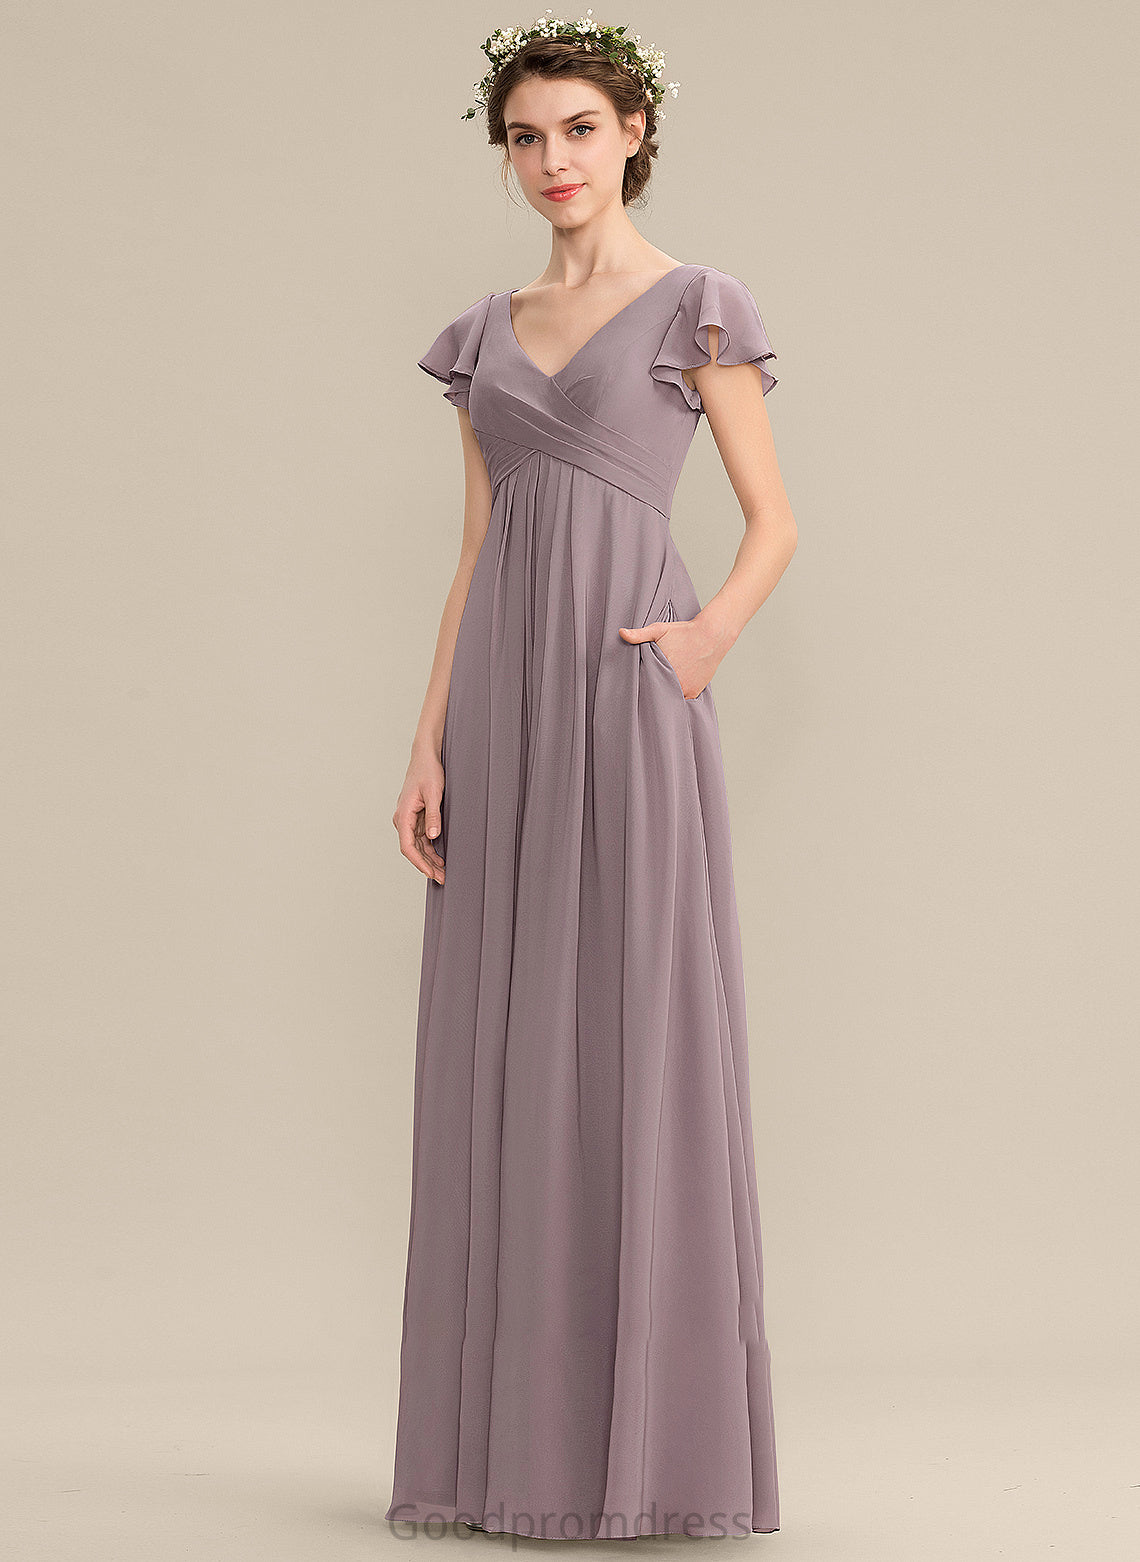 Pockets CascadingRuffles Embellishment Length Silhouette Fabric V-neck Neckline A-Line Floor-Length Camilla Sleeveless Bridesmaid Dresses